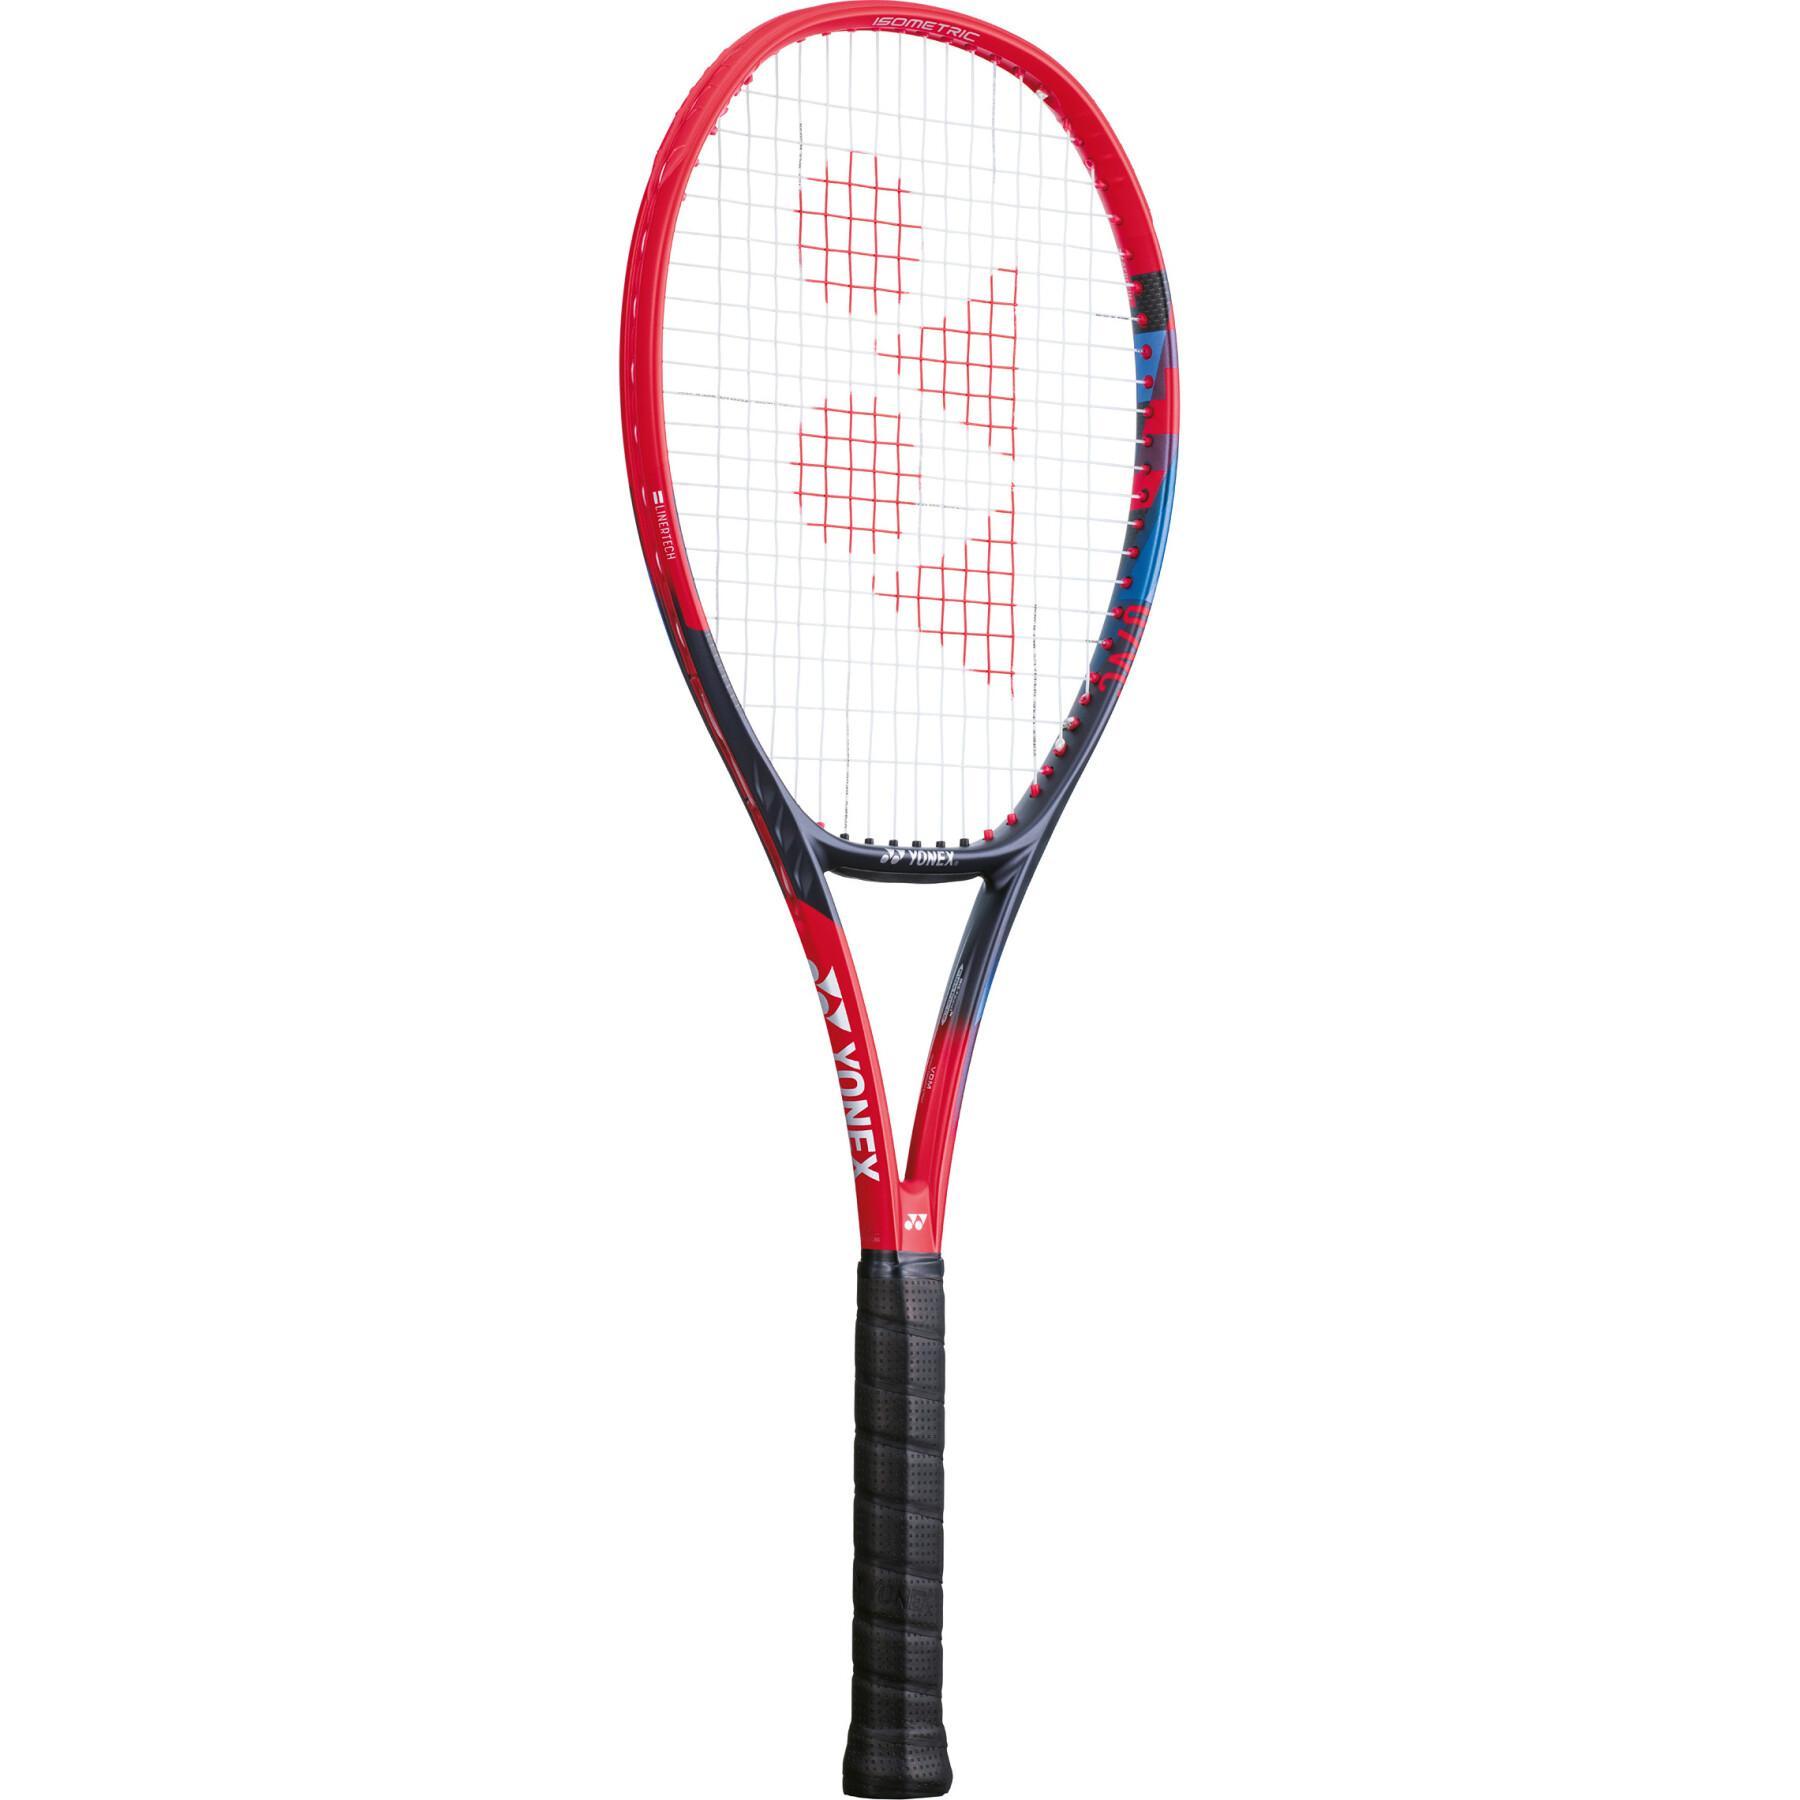 Tennis racket Yonex Vcore 95